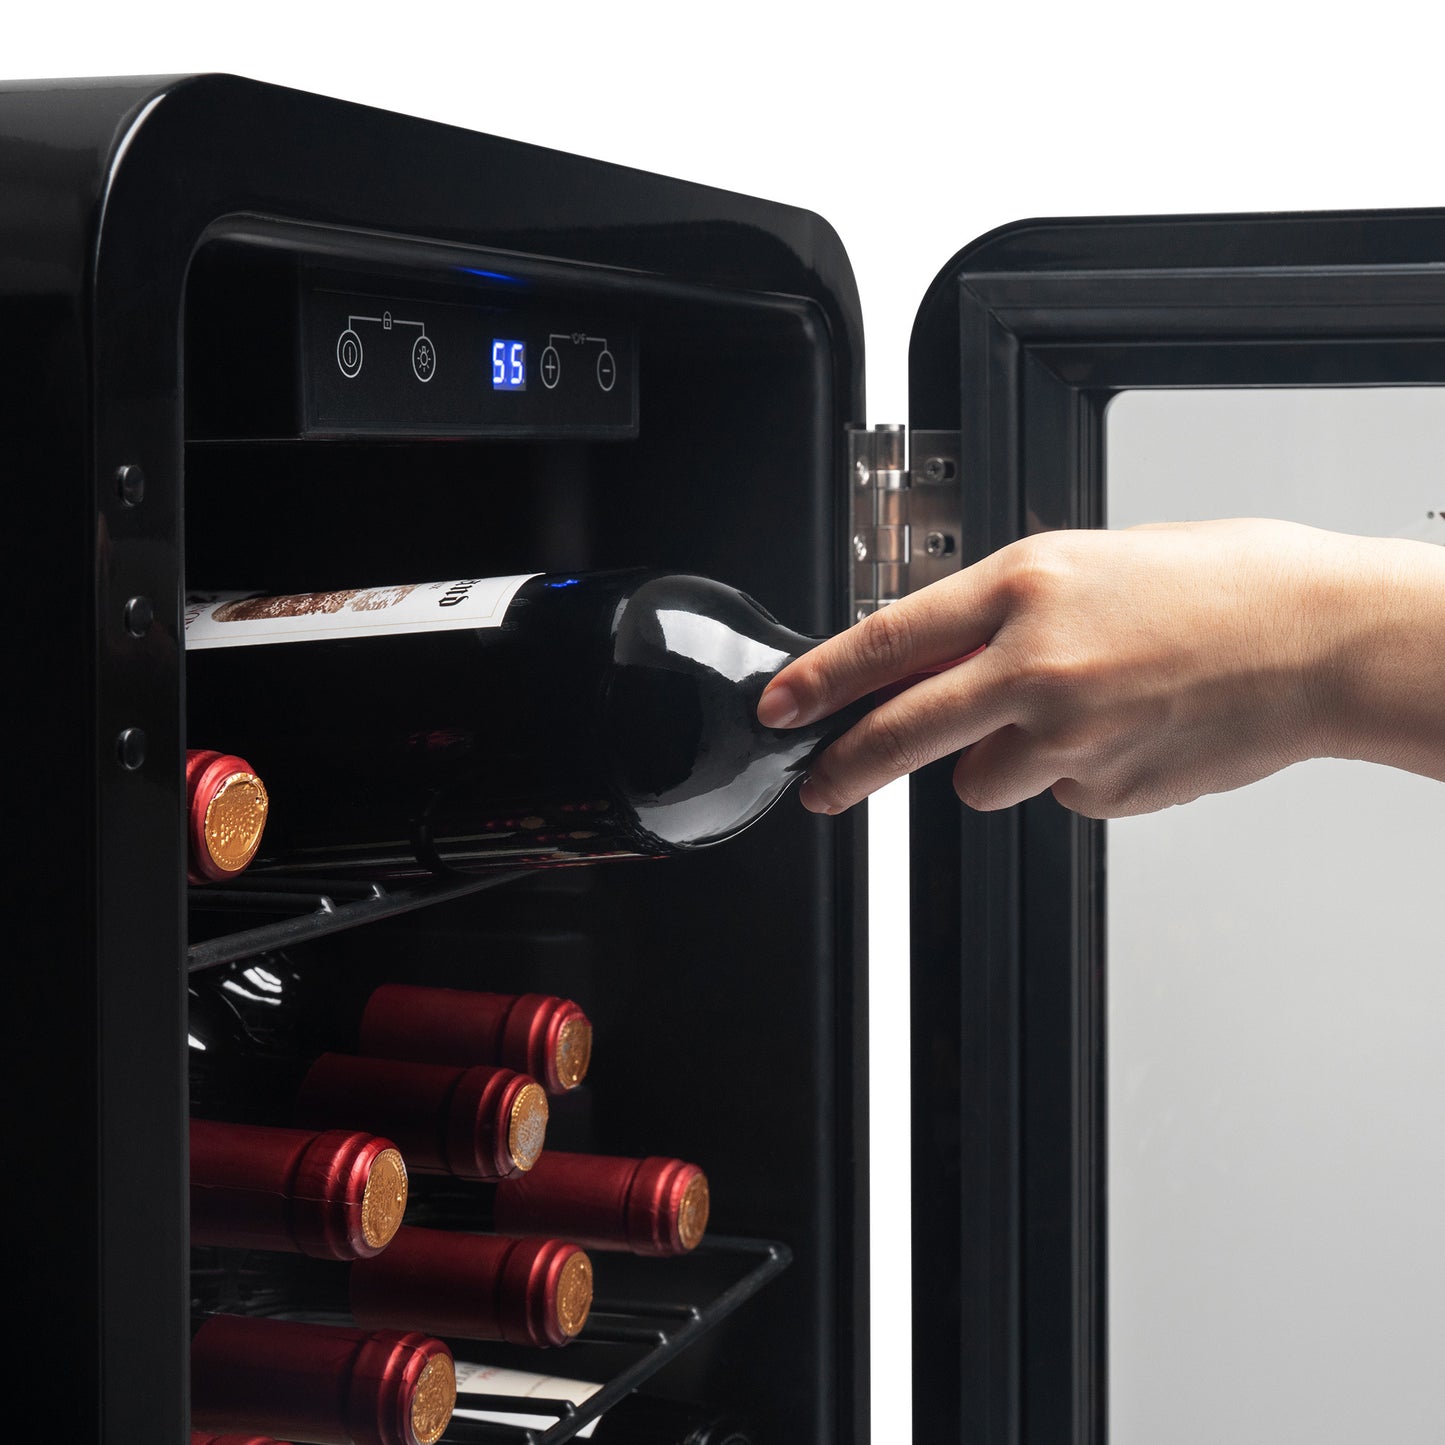 Freestanding Wine Cooler